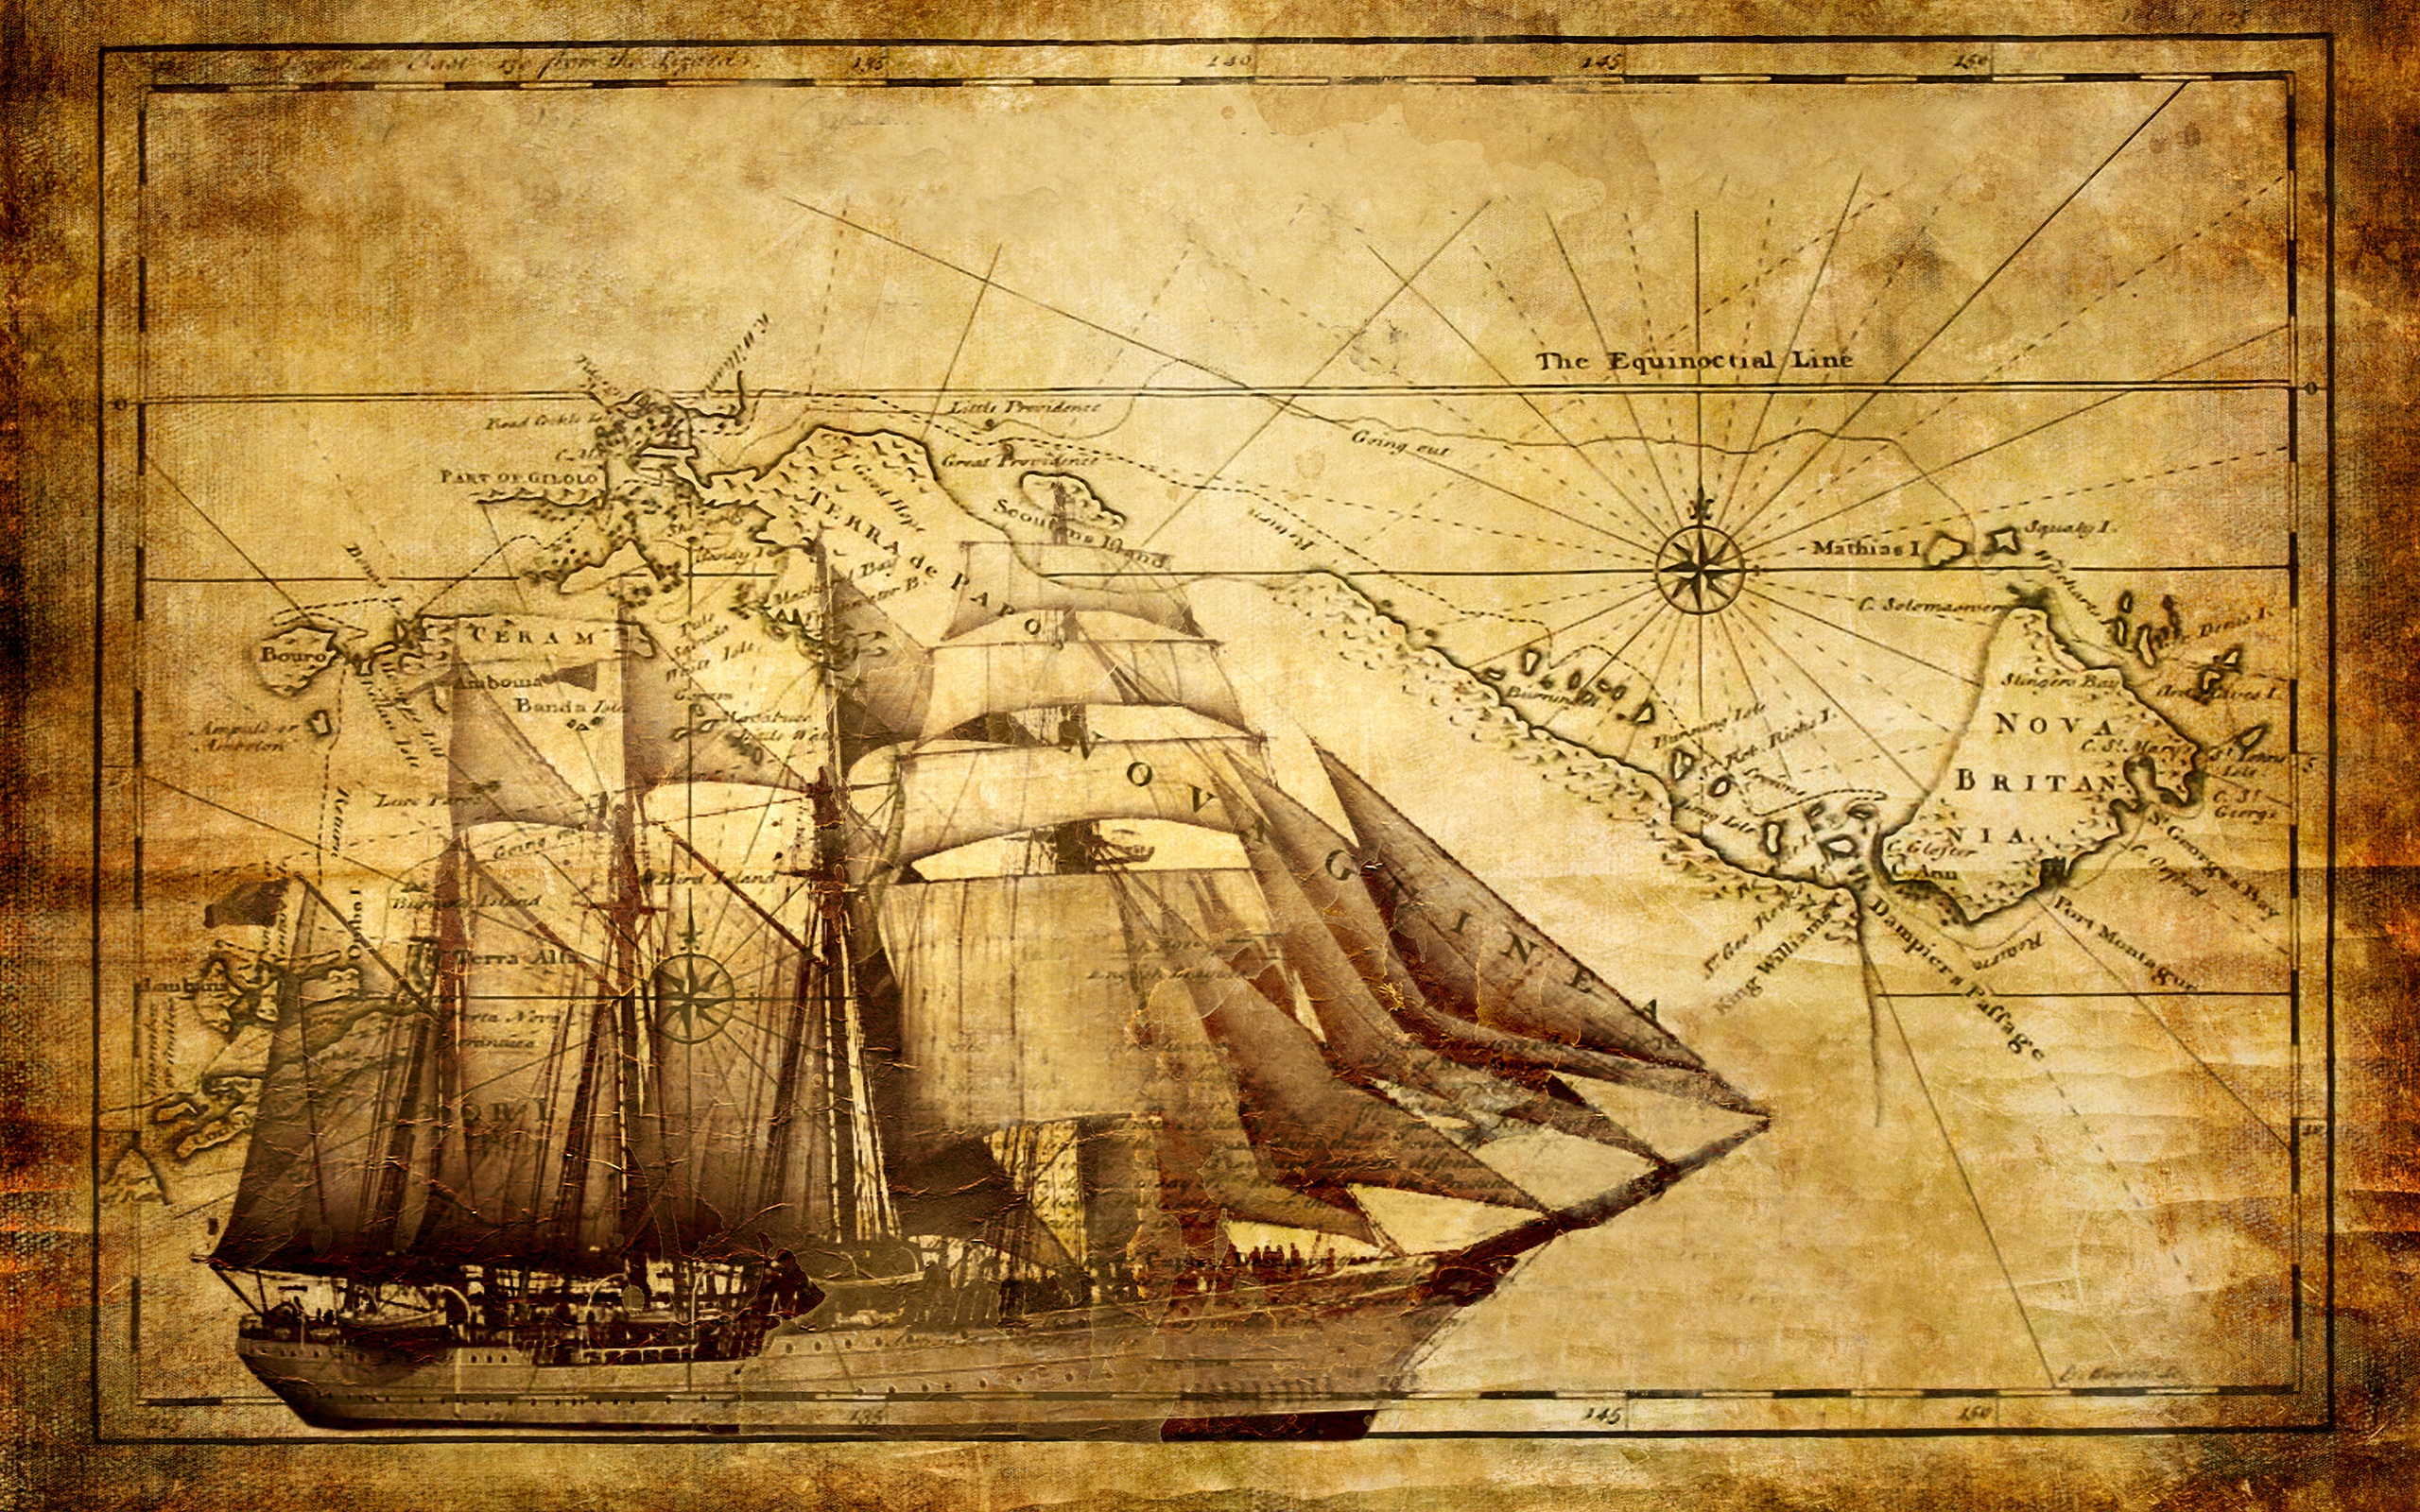 Nautical Chart Wallpaper Ralph